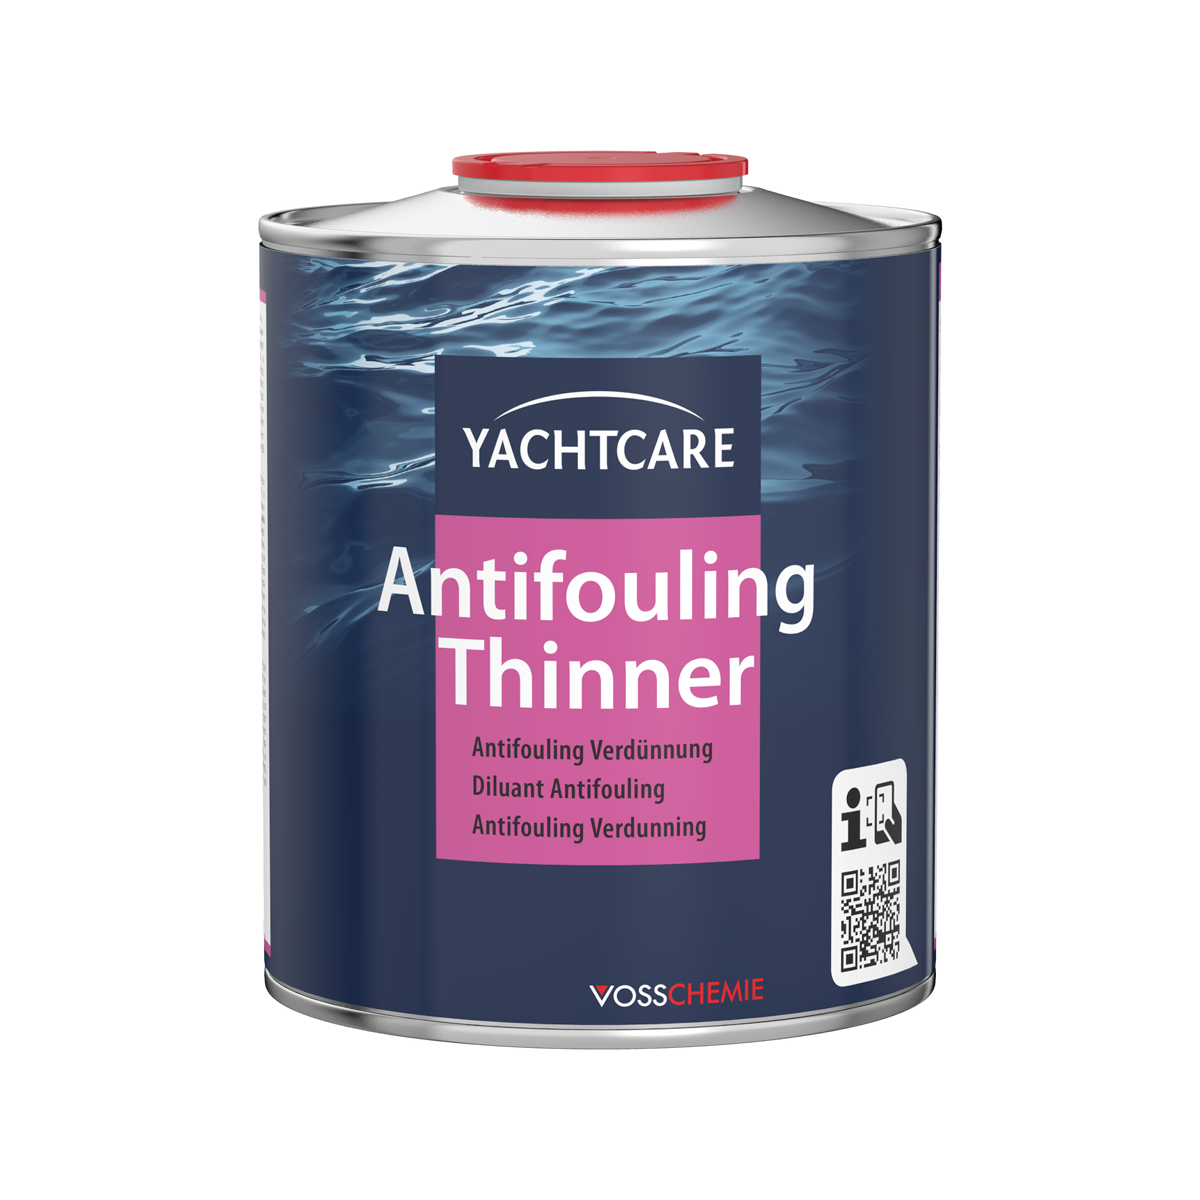 Yachtcare Antifouling Thinner verdunning - 750ml